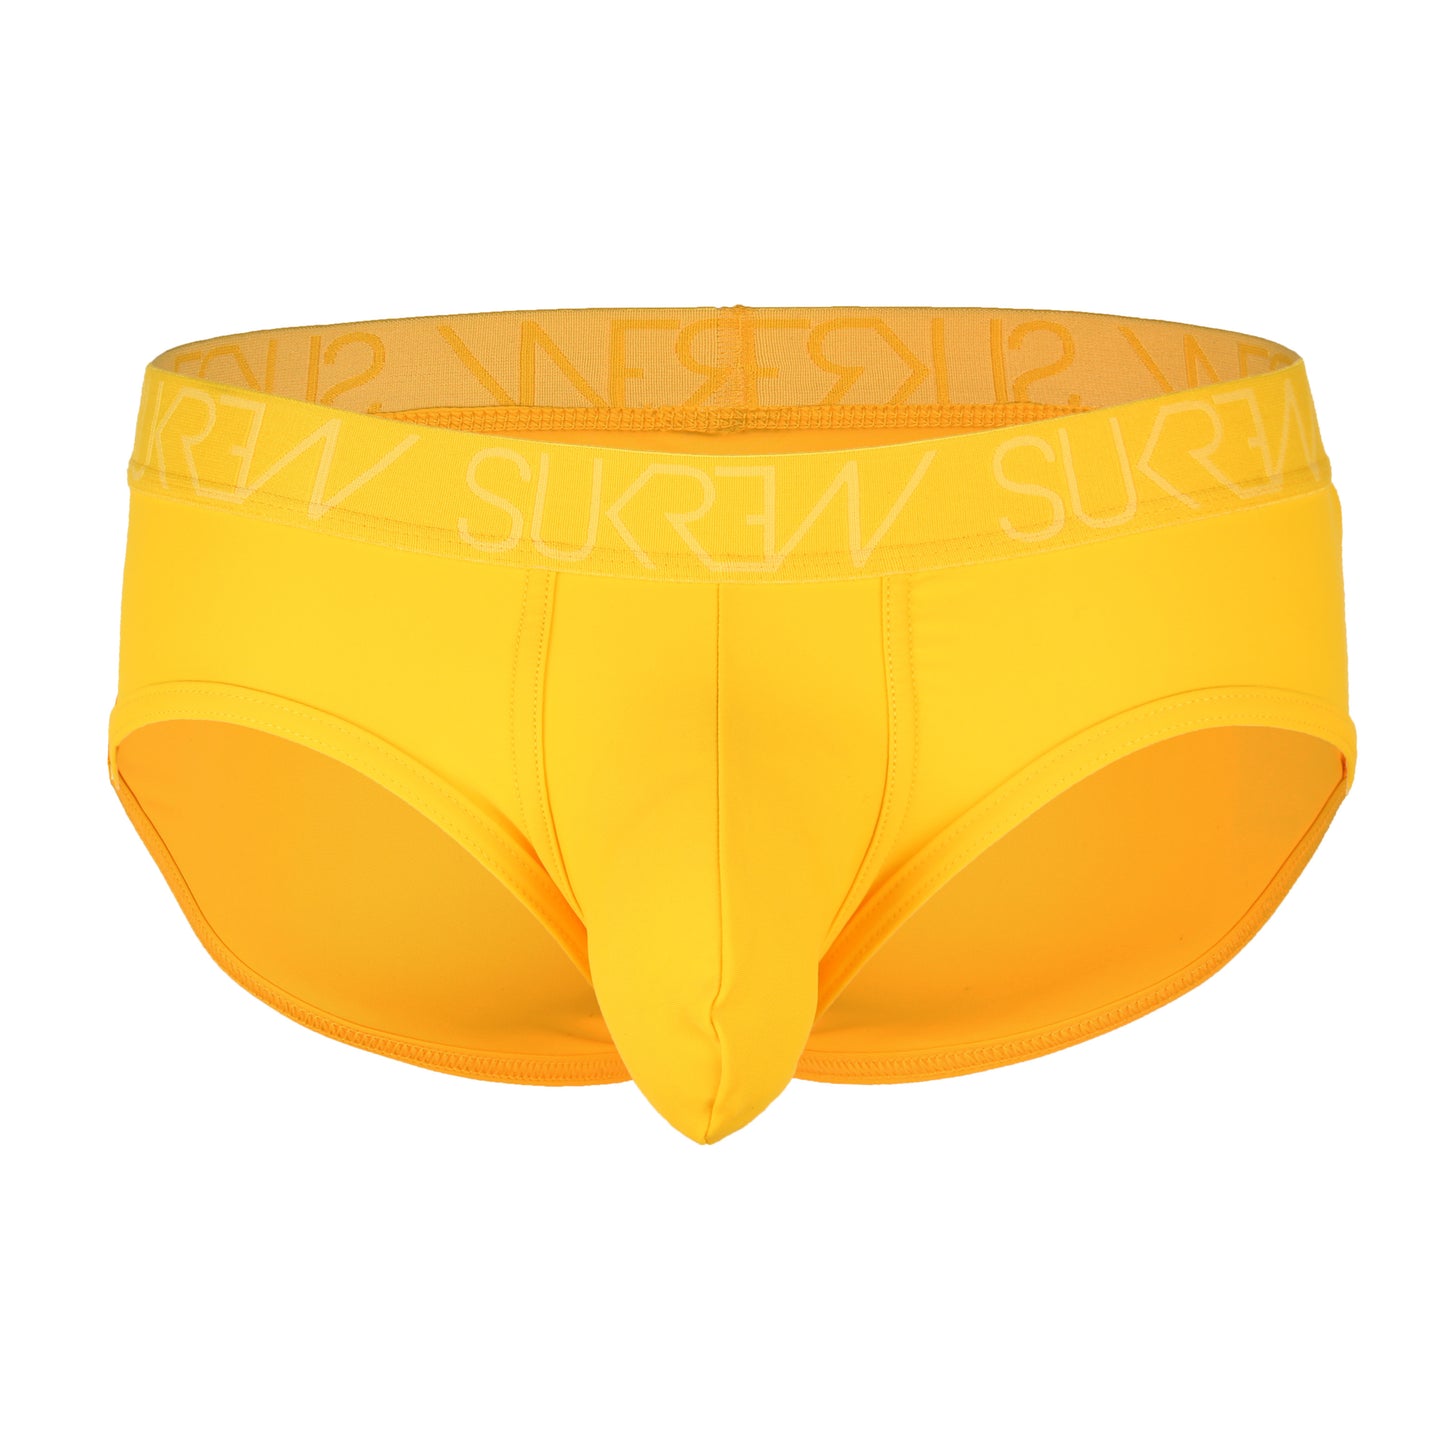 Sukrew - Apex Brief - Yellow - Small